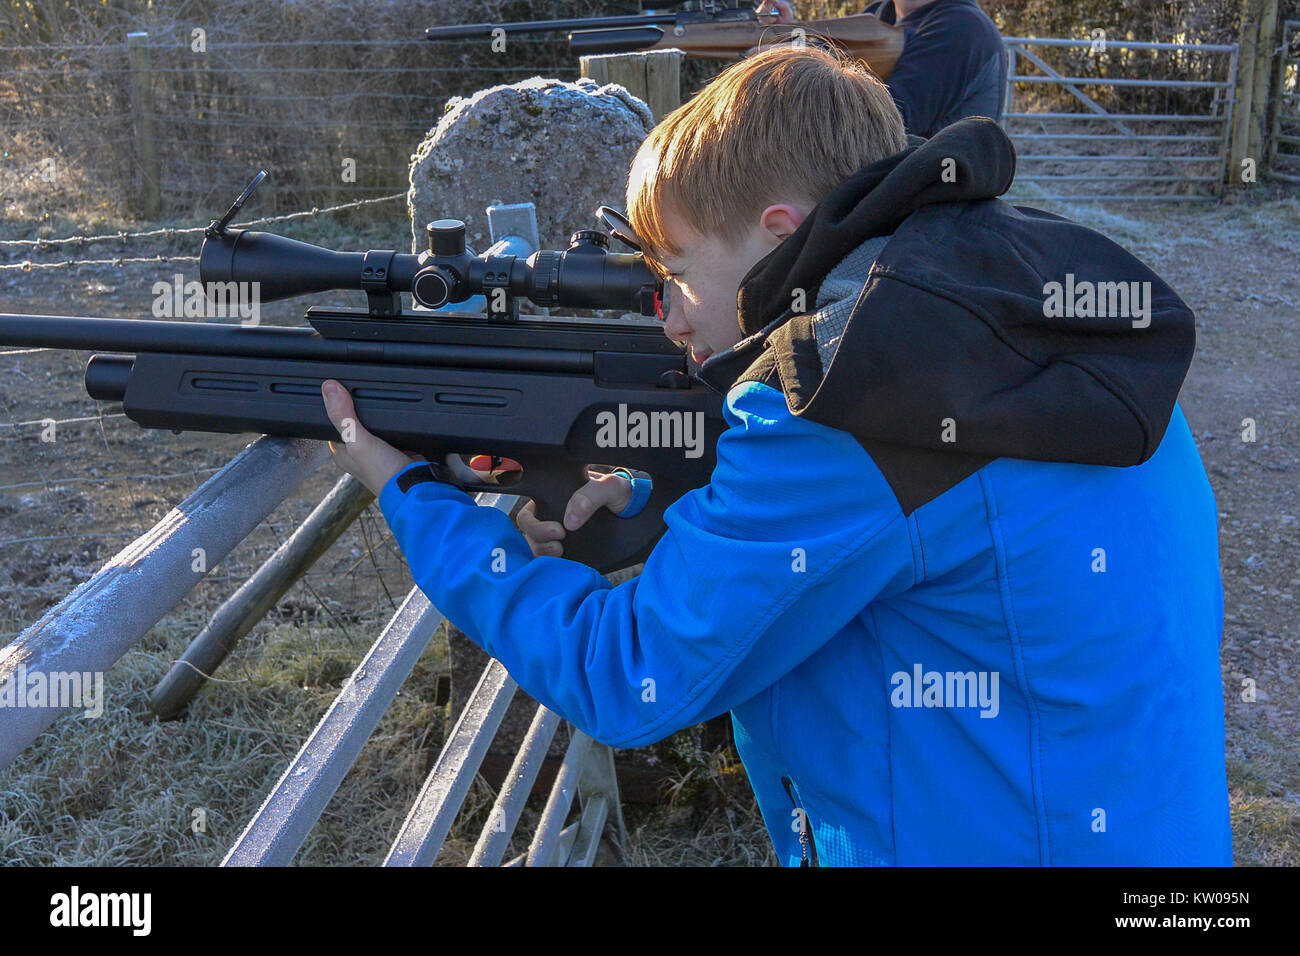 Teenager feuern ein Luftgewehr in der Landschaft auf einem kalten, frostigen Tag Stockfoto